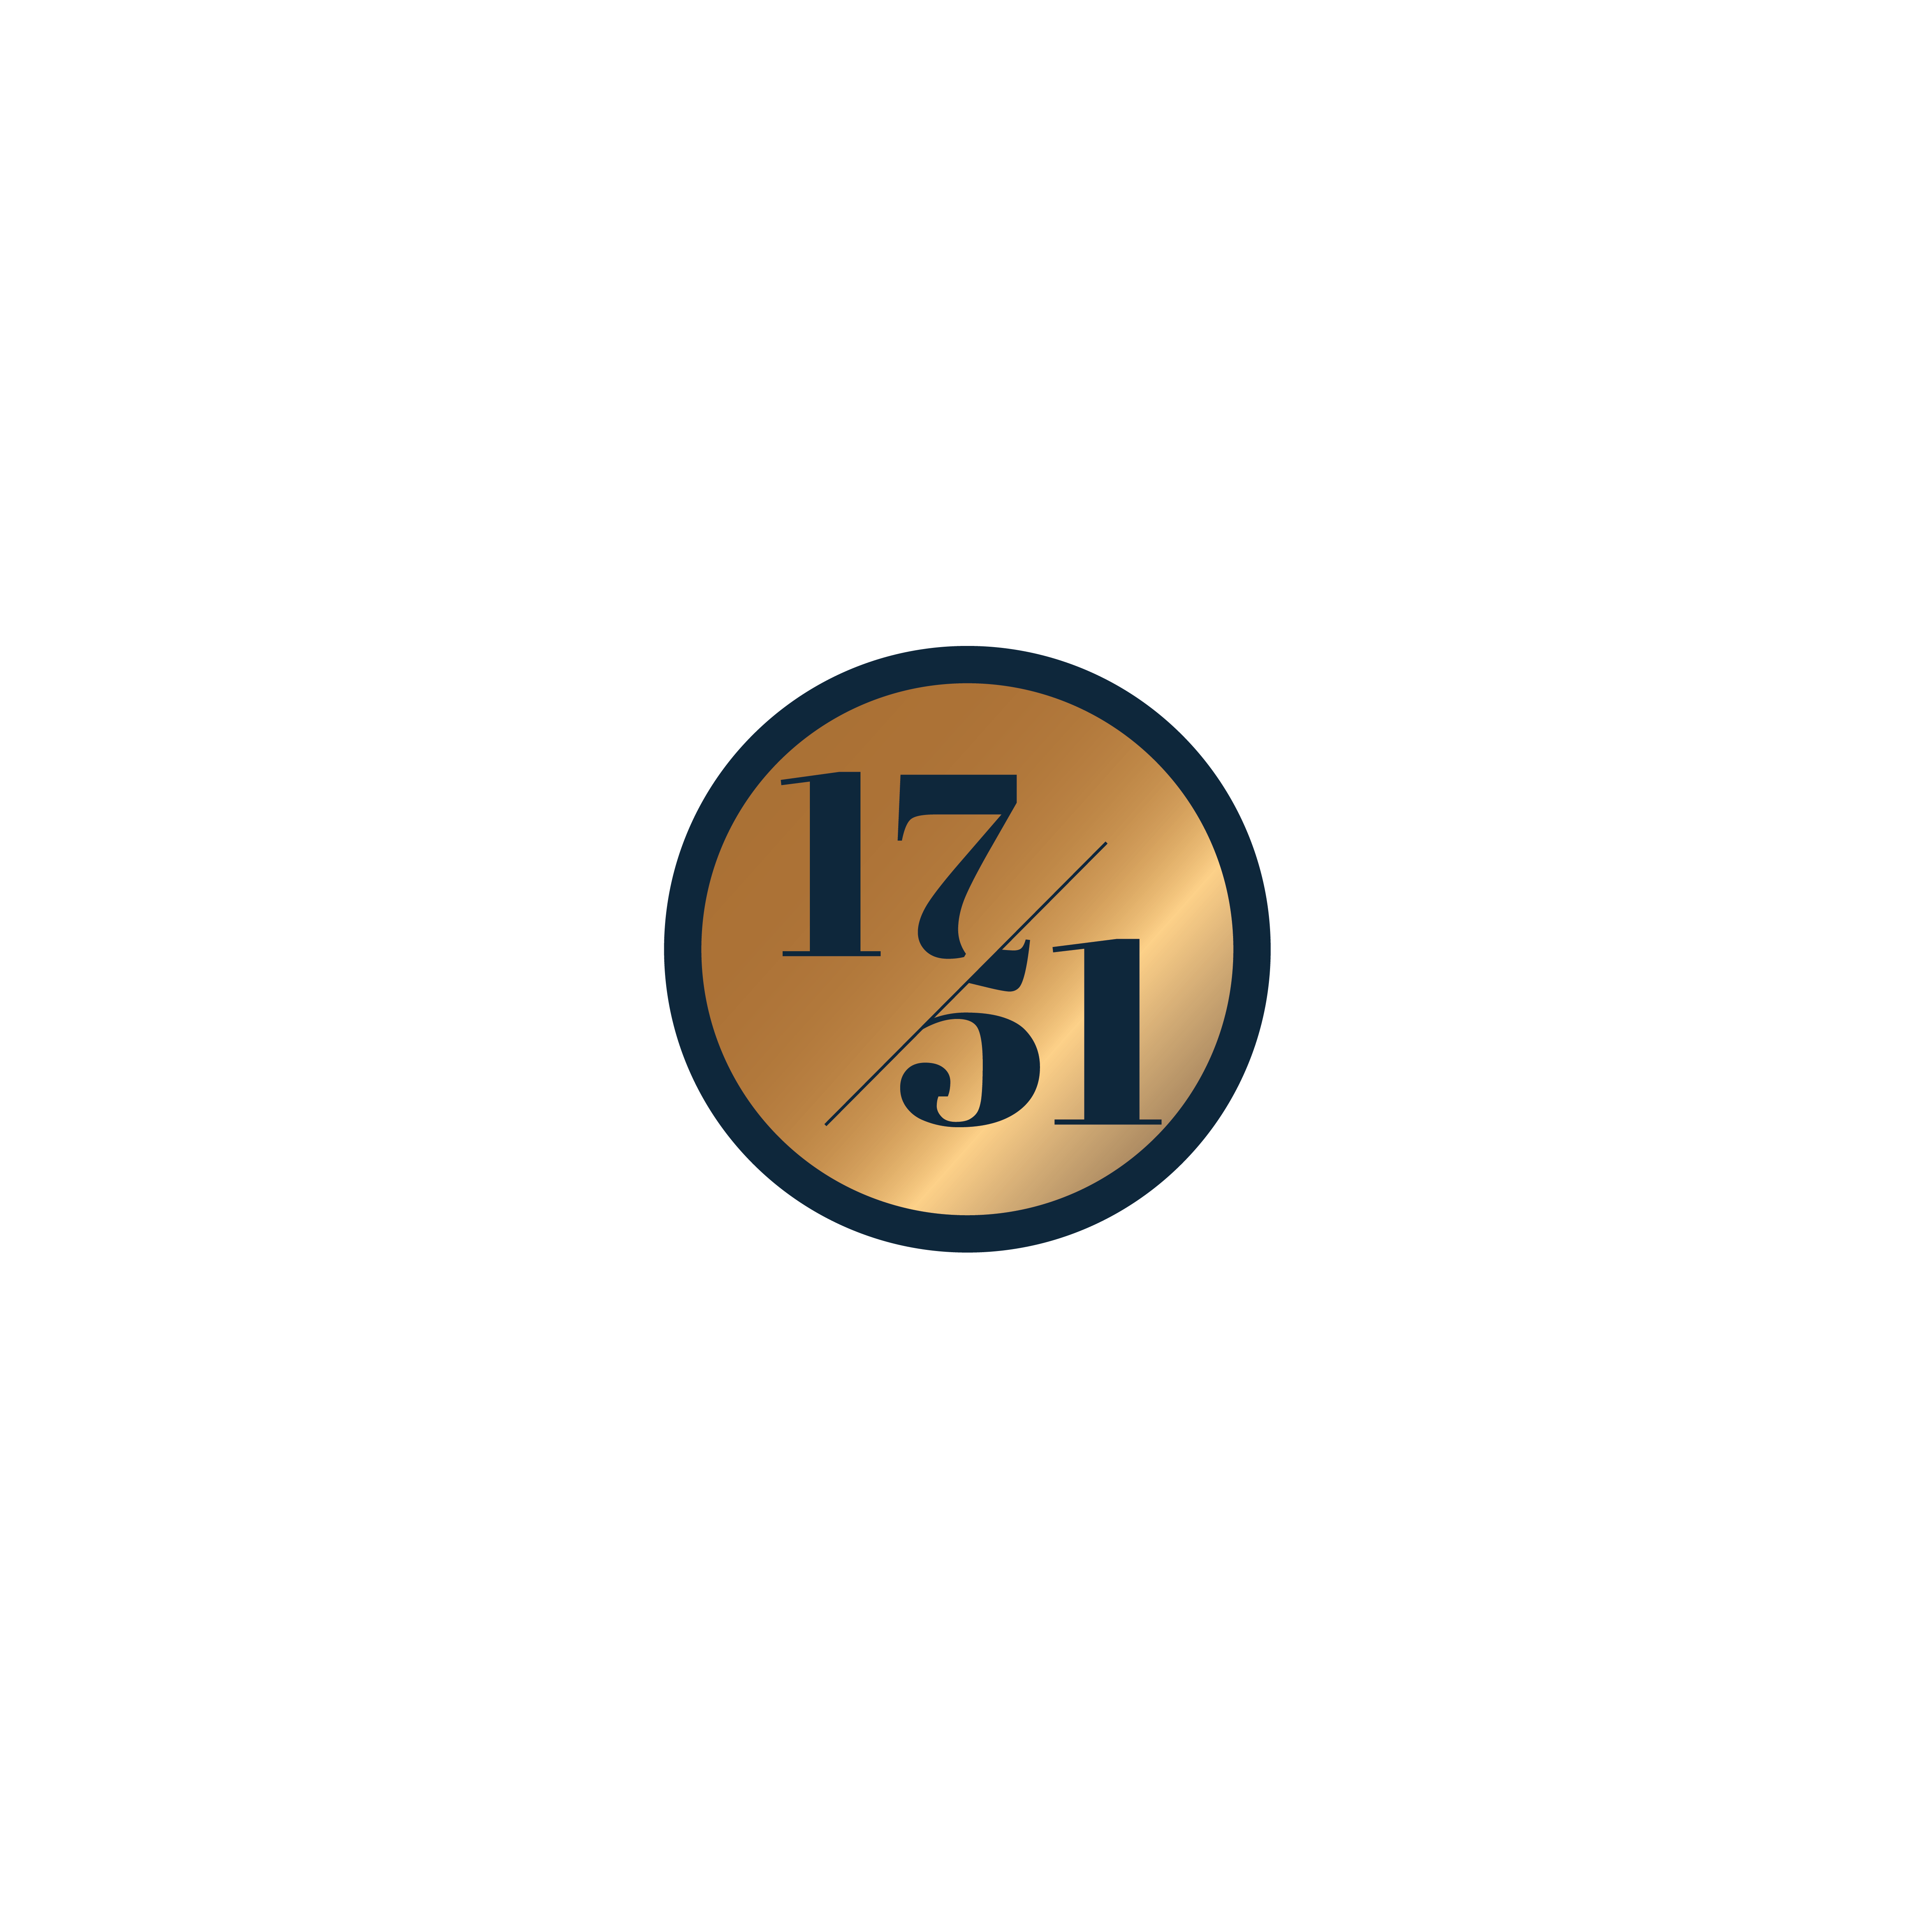 1751 Distillery Bar & Kitchen Logo